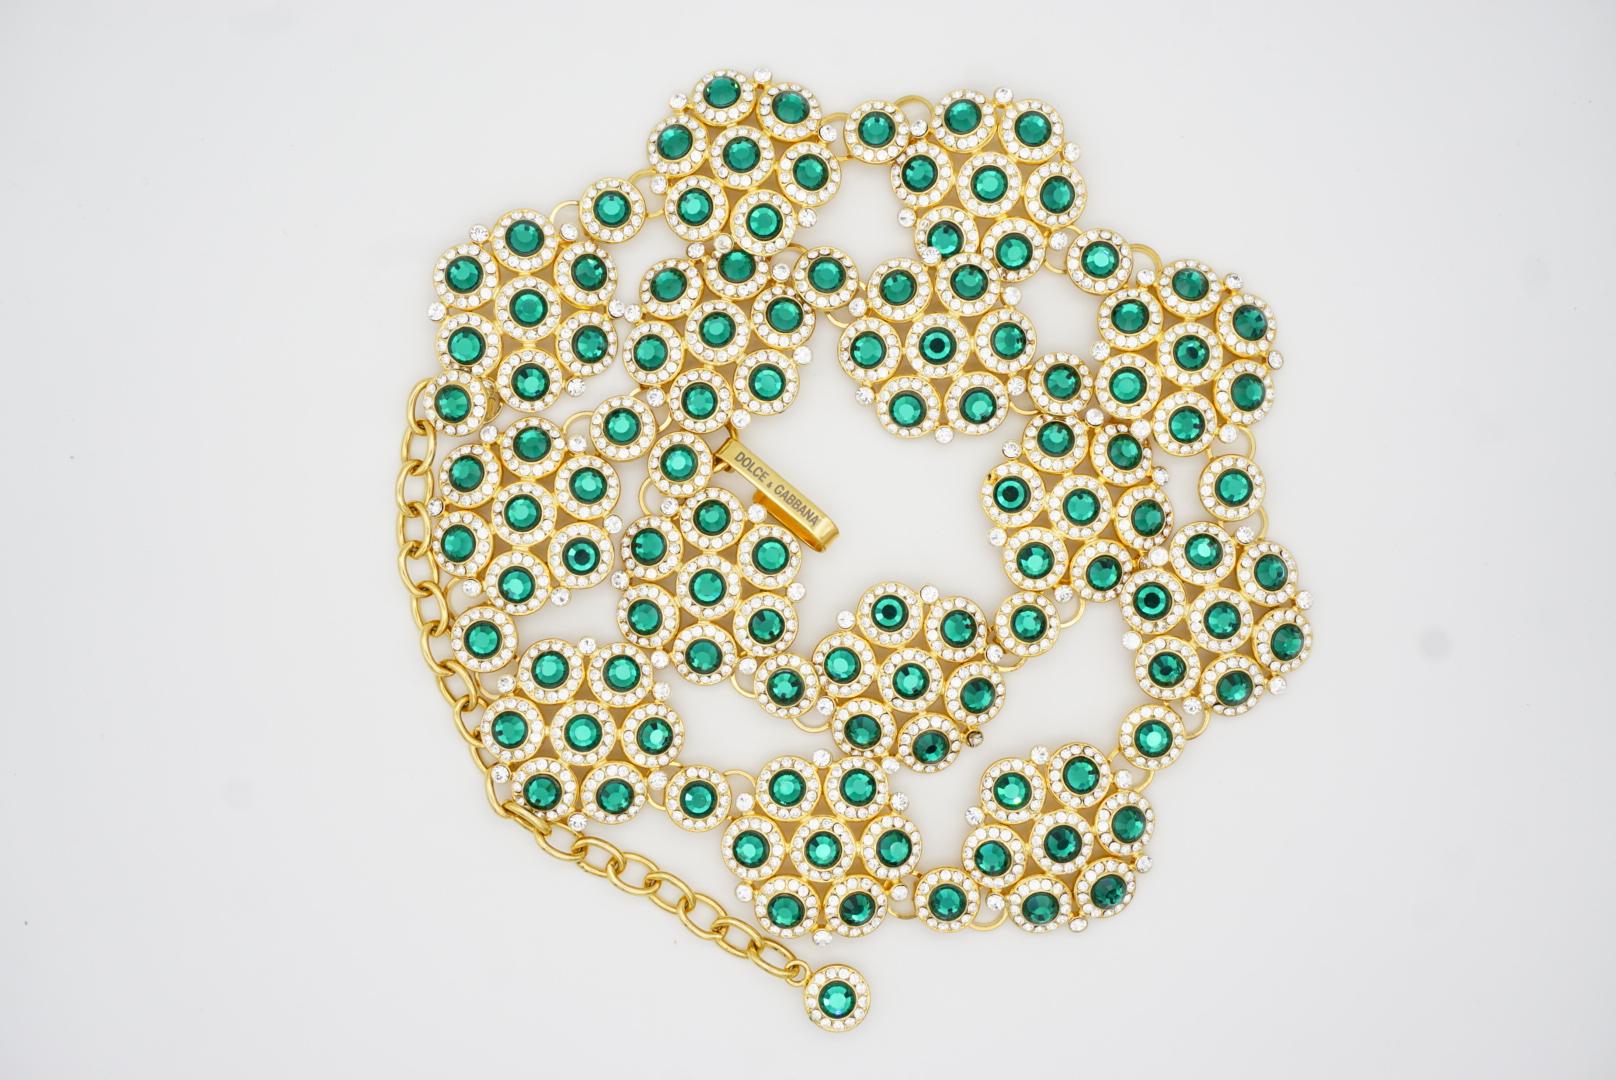 DOLCE & GABBANA Vintage Emerald Green Crystals Floral Interlock Belt Necklace For Sale 7